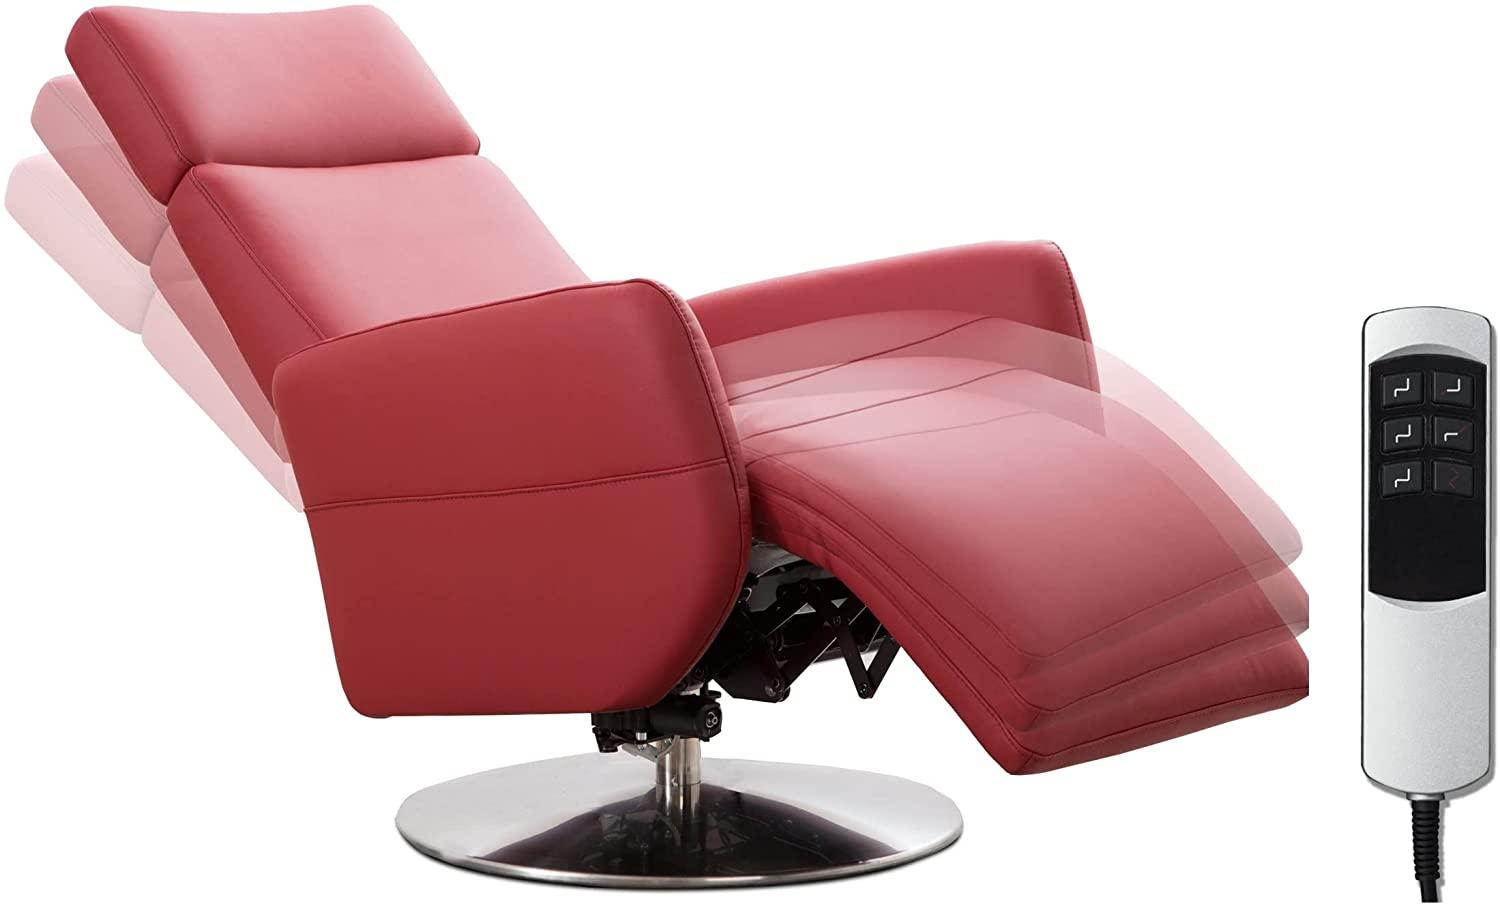 Cavadore TV-Sessel Cobra mit 2 E-Motoren / Elektrischer Fernsehsessel mit Fernbedienung / Relaxfunktion, Liegefunktion / Ergonomie S / Belastbar bis 130 kg / 71 x 108 x 82 / Echtleder Rot Bild 1